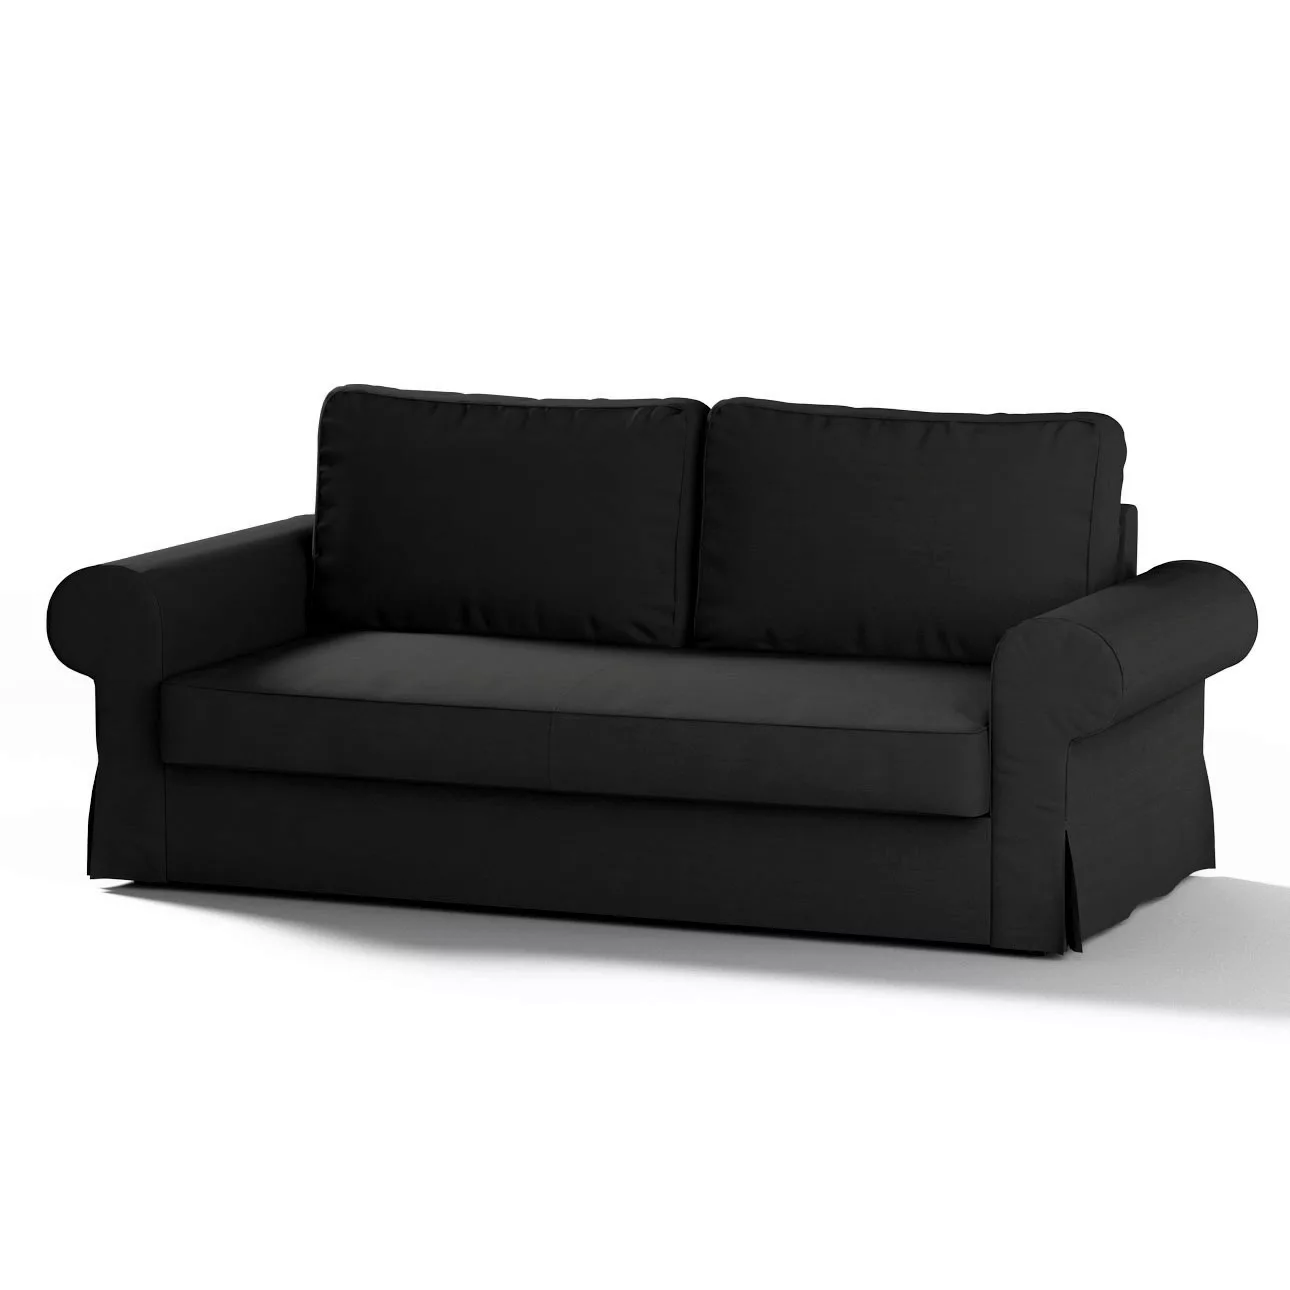 Bezug für Backabro 3-Sitzer Sofa ausklappbar, anthrazit, Bezug für Backabro günstig online kaufen